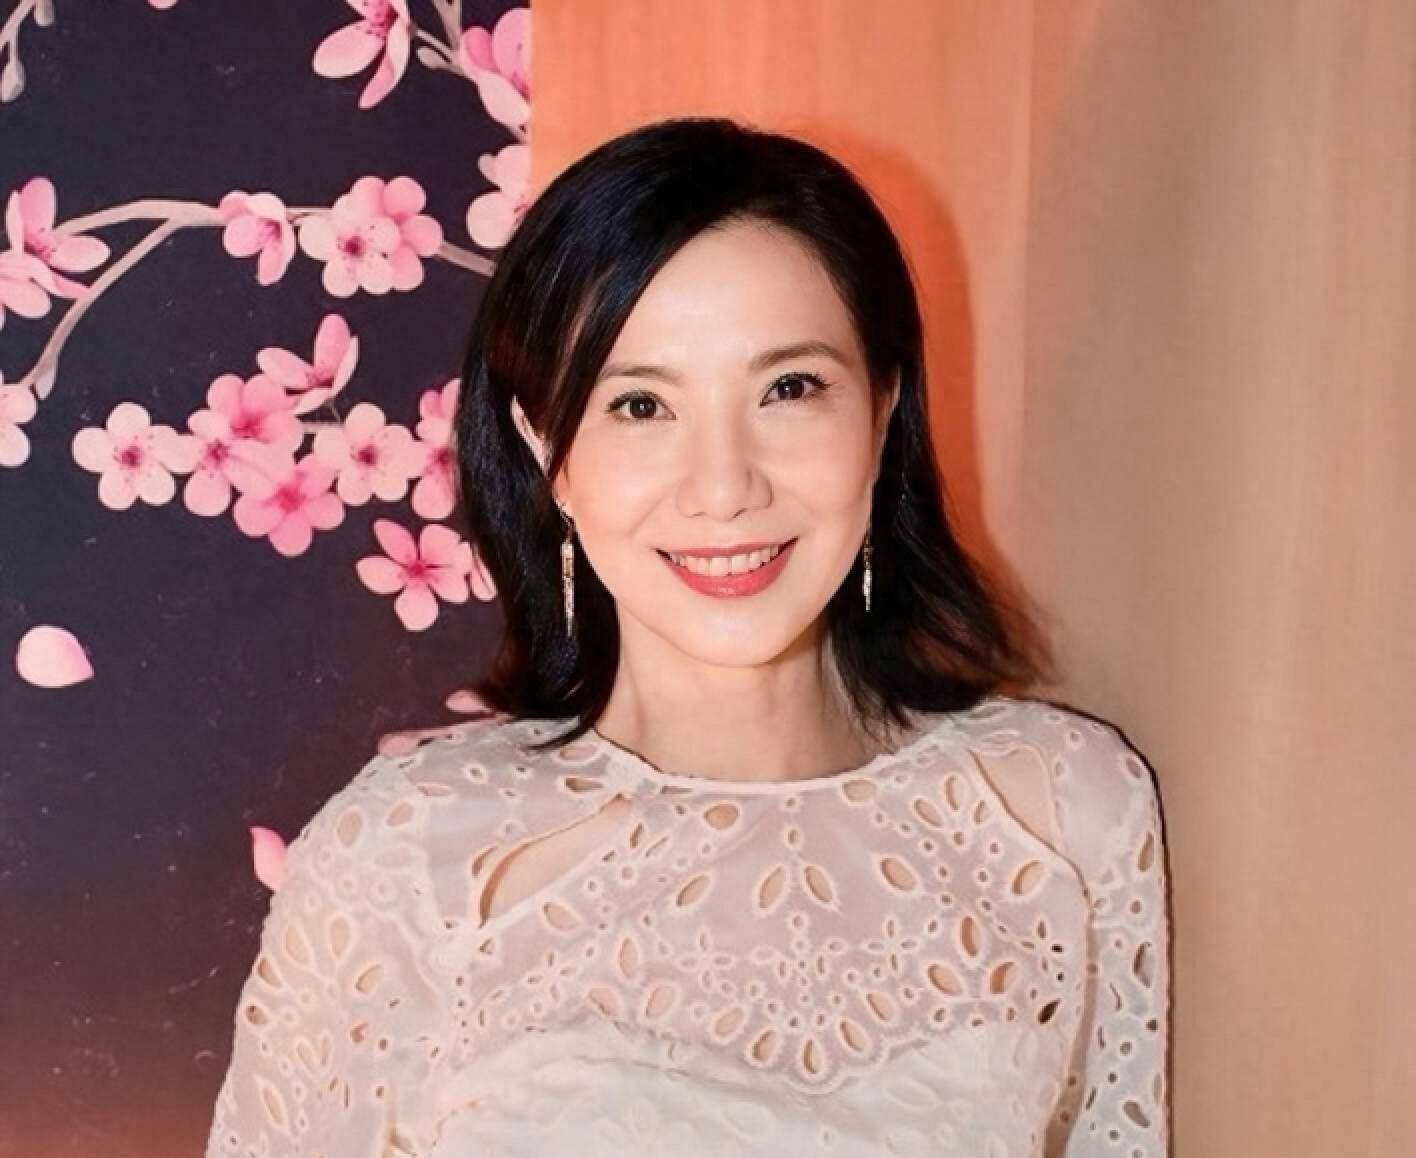 香港媒体报道称,知名女演员关秀媚在采访中透露自己已经离婚,这一消息